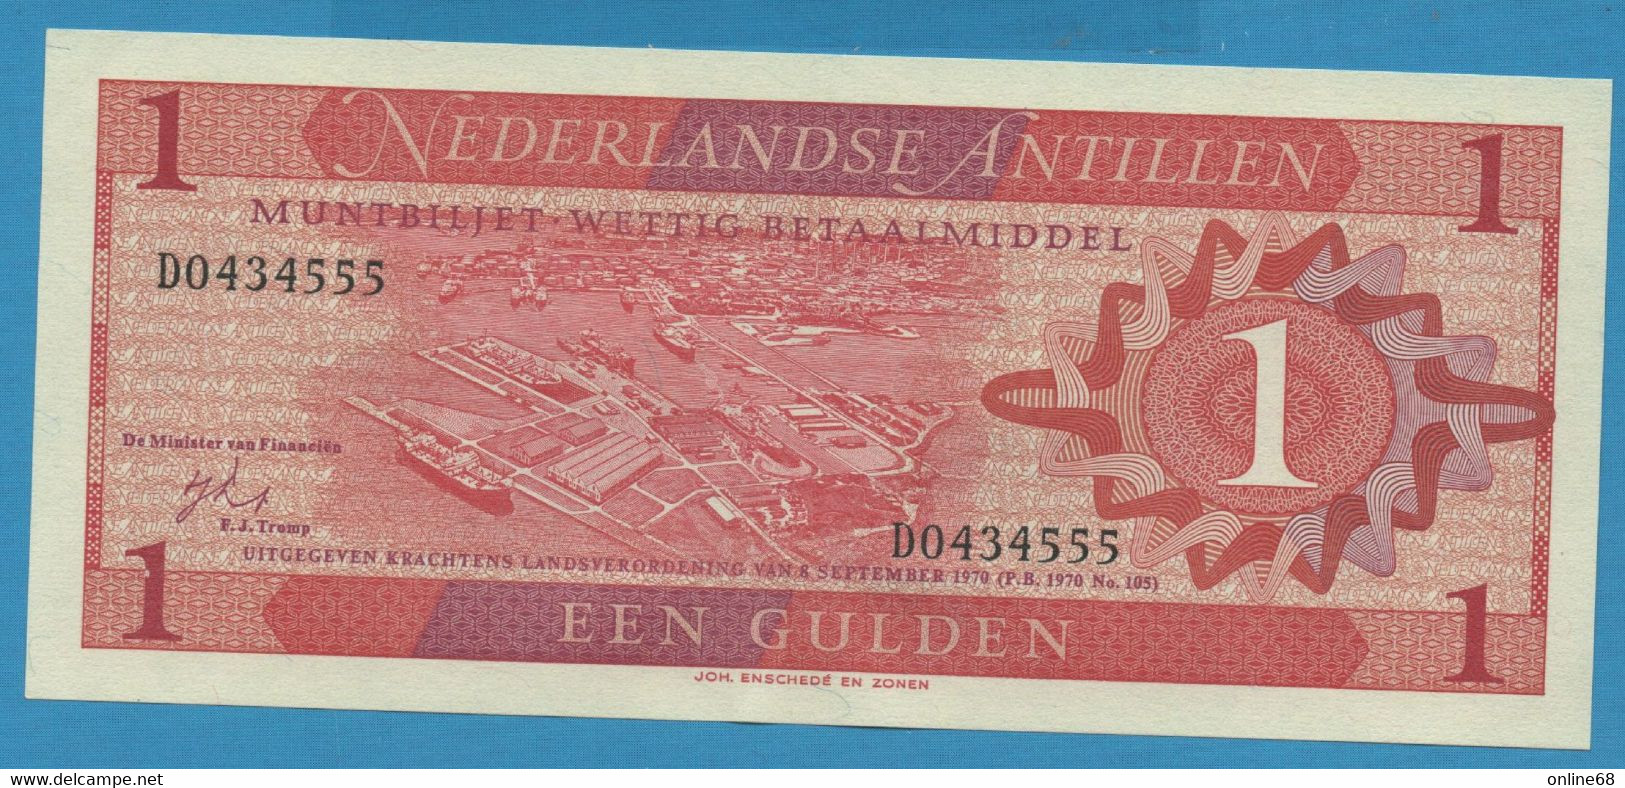 NEDERLANDSE ANTILLEN 1 GULDEN 08.09.1970 # D0434555 P# 20 Willemstad Curaçao - Niederländische Antillen (...-1986)